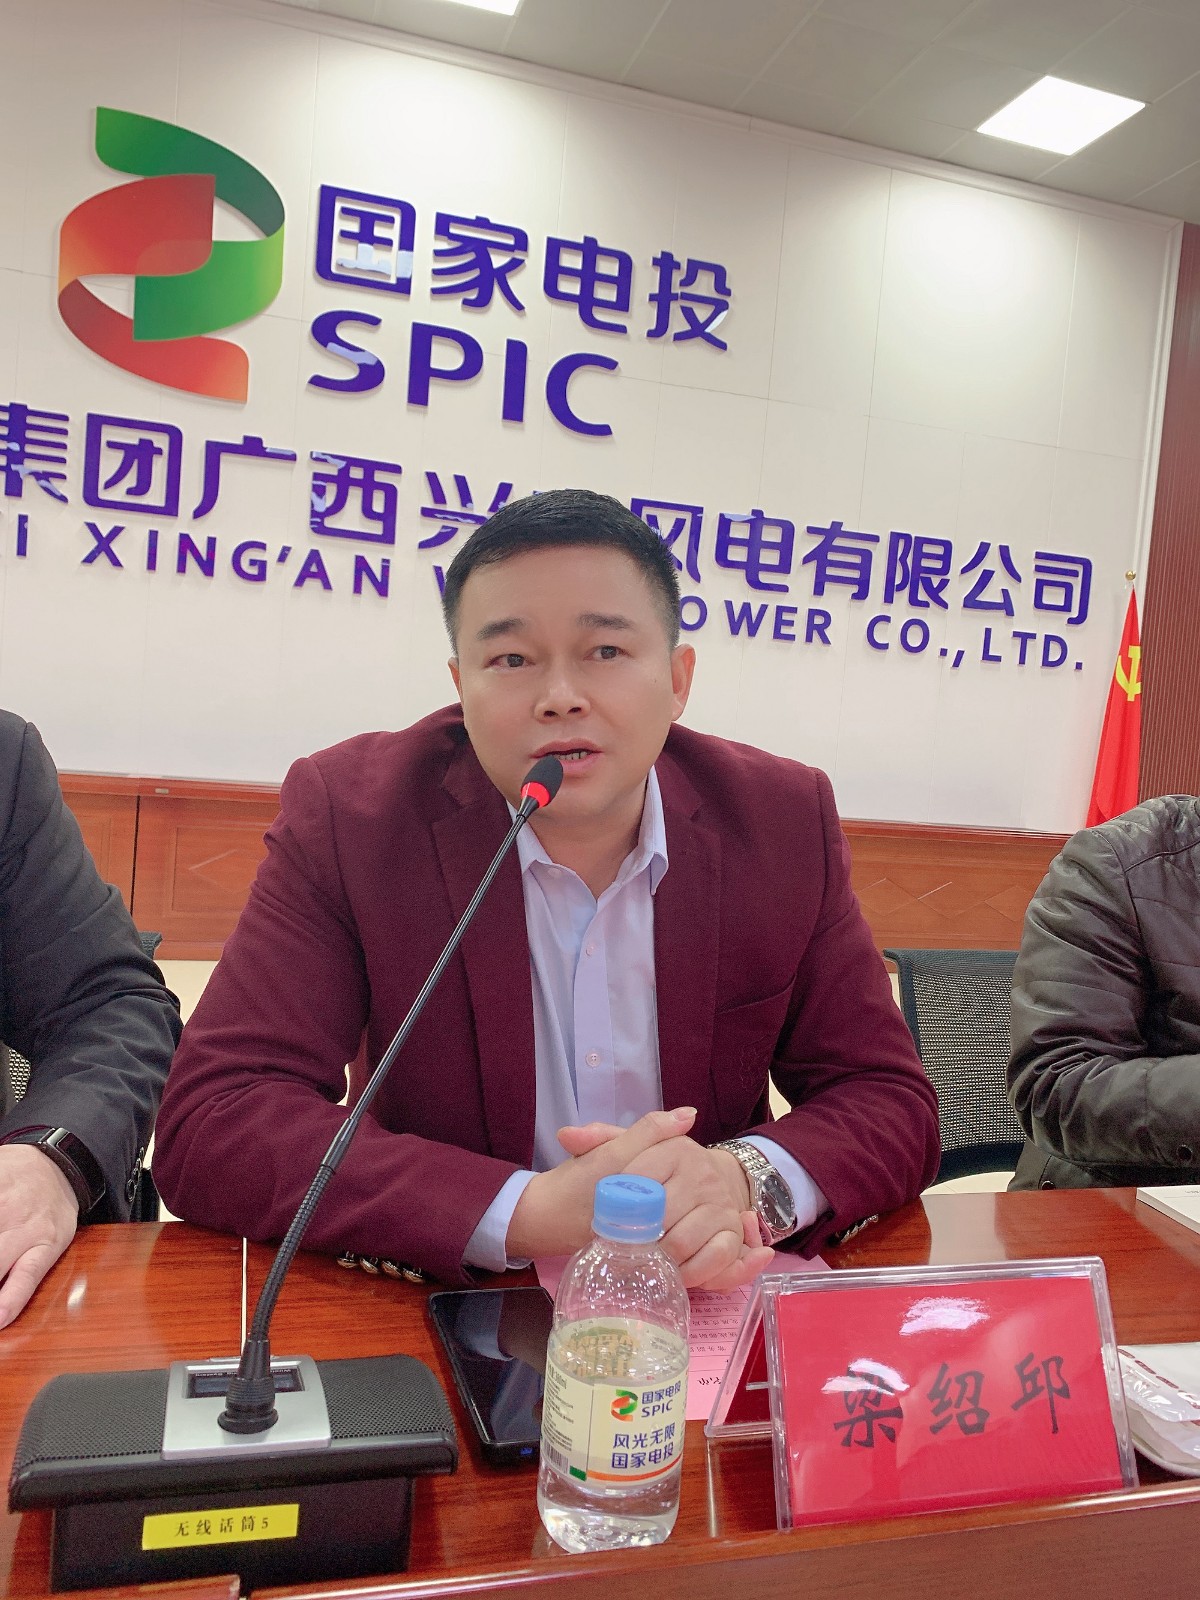 兴安县承接东部产业转移招商座谈会在桂林兴安召开